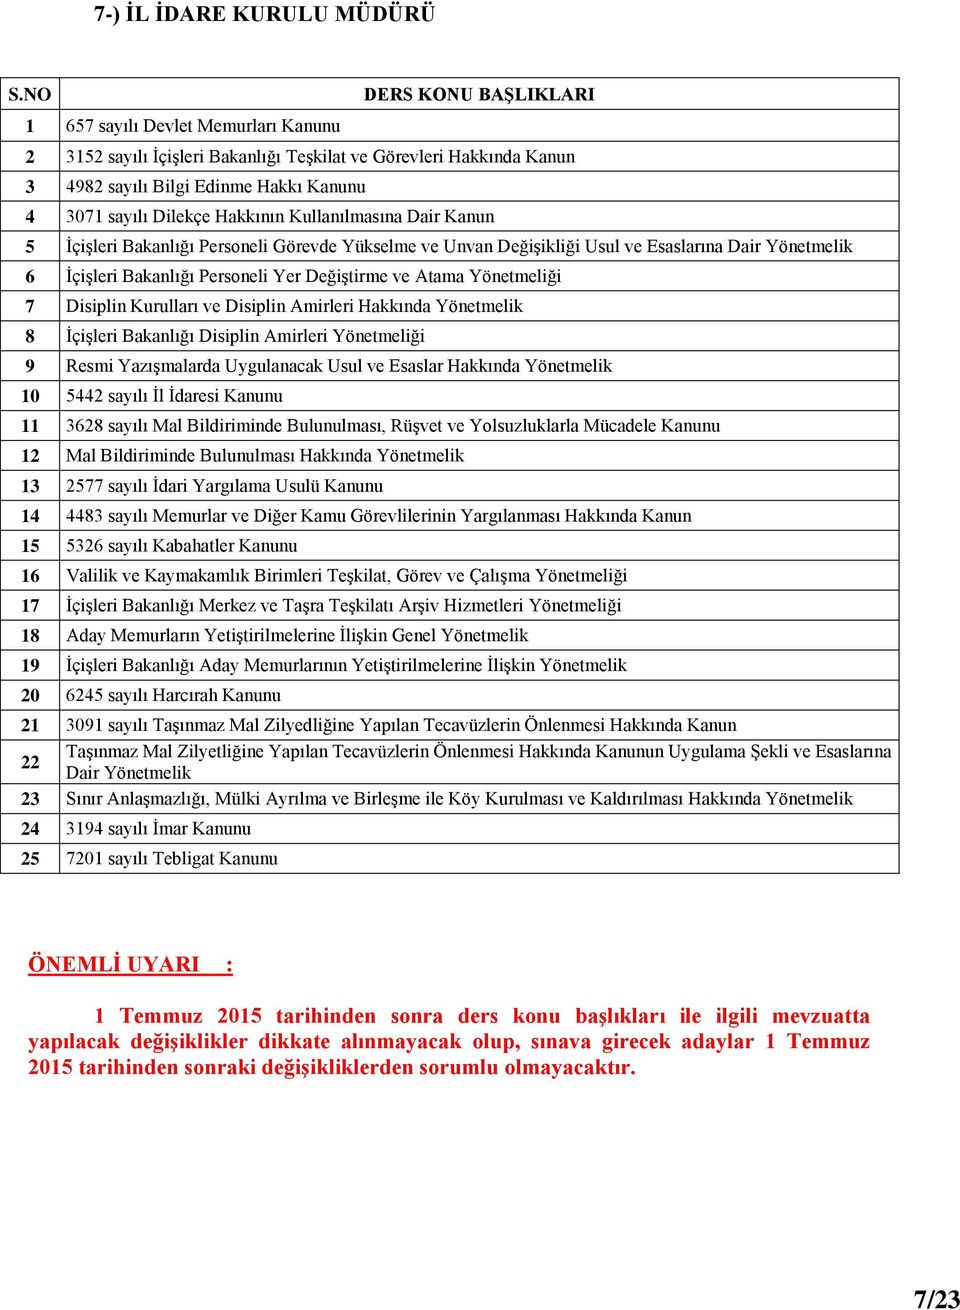 Teşkilat, Görev ve Çalışma Yönetmeliği 17 İçişleri Bakanlığı Merkez ve Taşra Teşkilatı Arşiv Hizmetleri Yönetmeliği 18 Aday Memurların Yetiştirilmelerine İlişkin Genel Yönetmelik 19 İçişleri